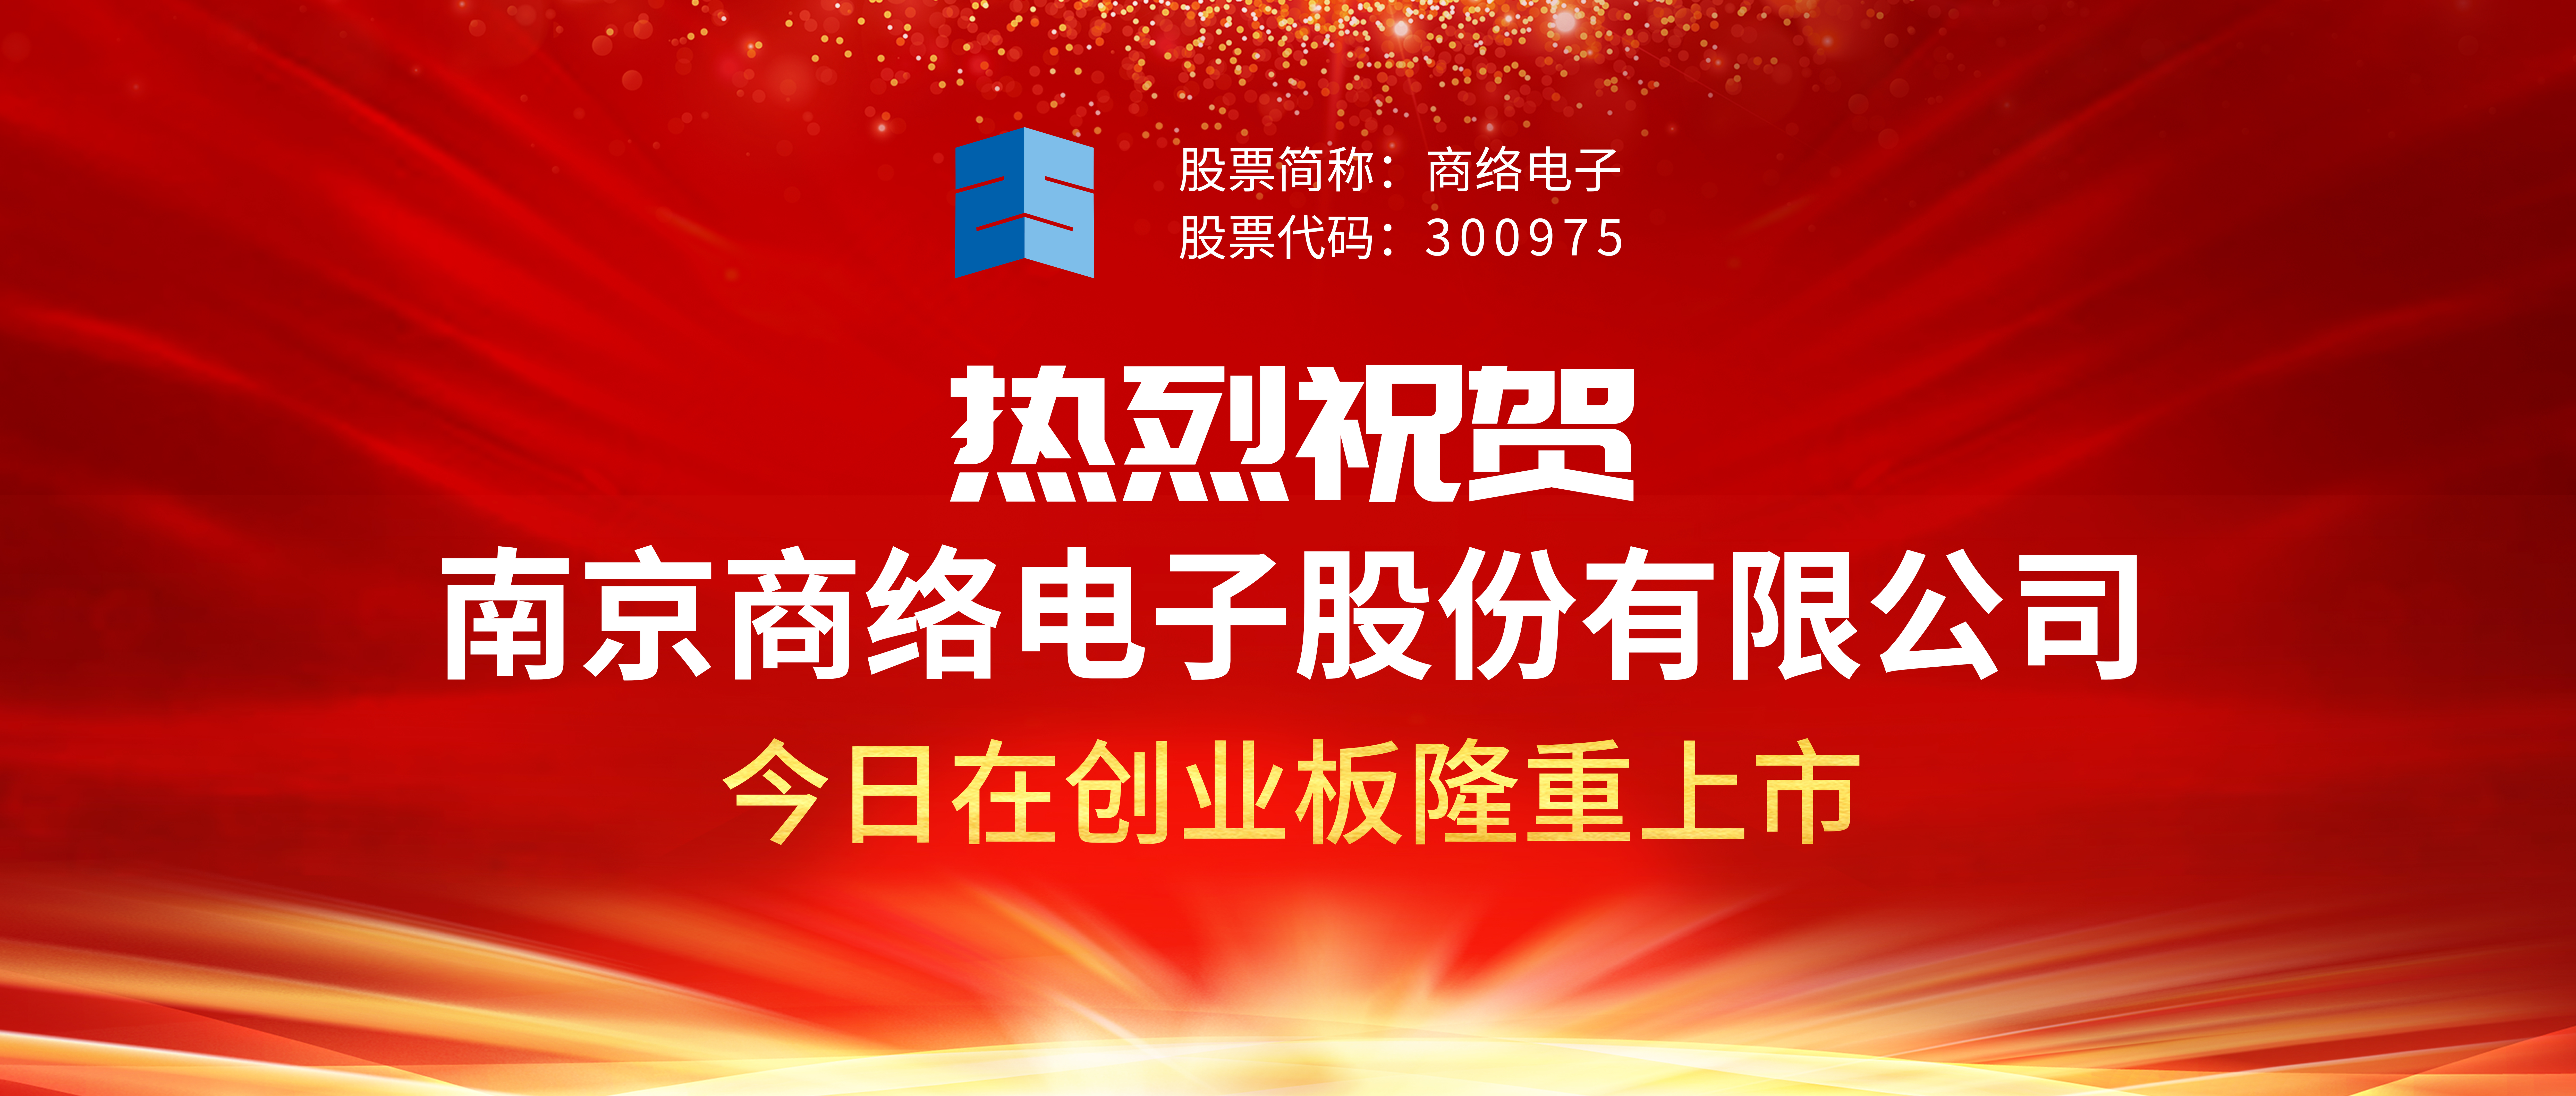 热烈祝贺 南京商络电子股份有限公司在创业板隆重上市